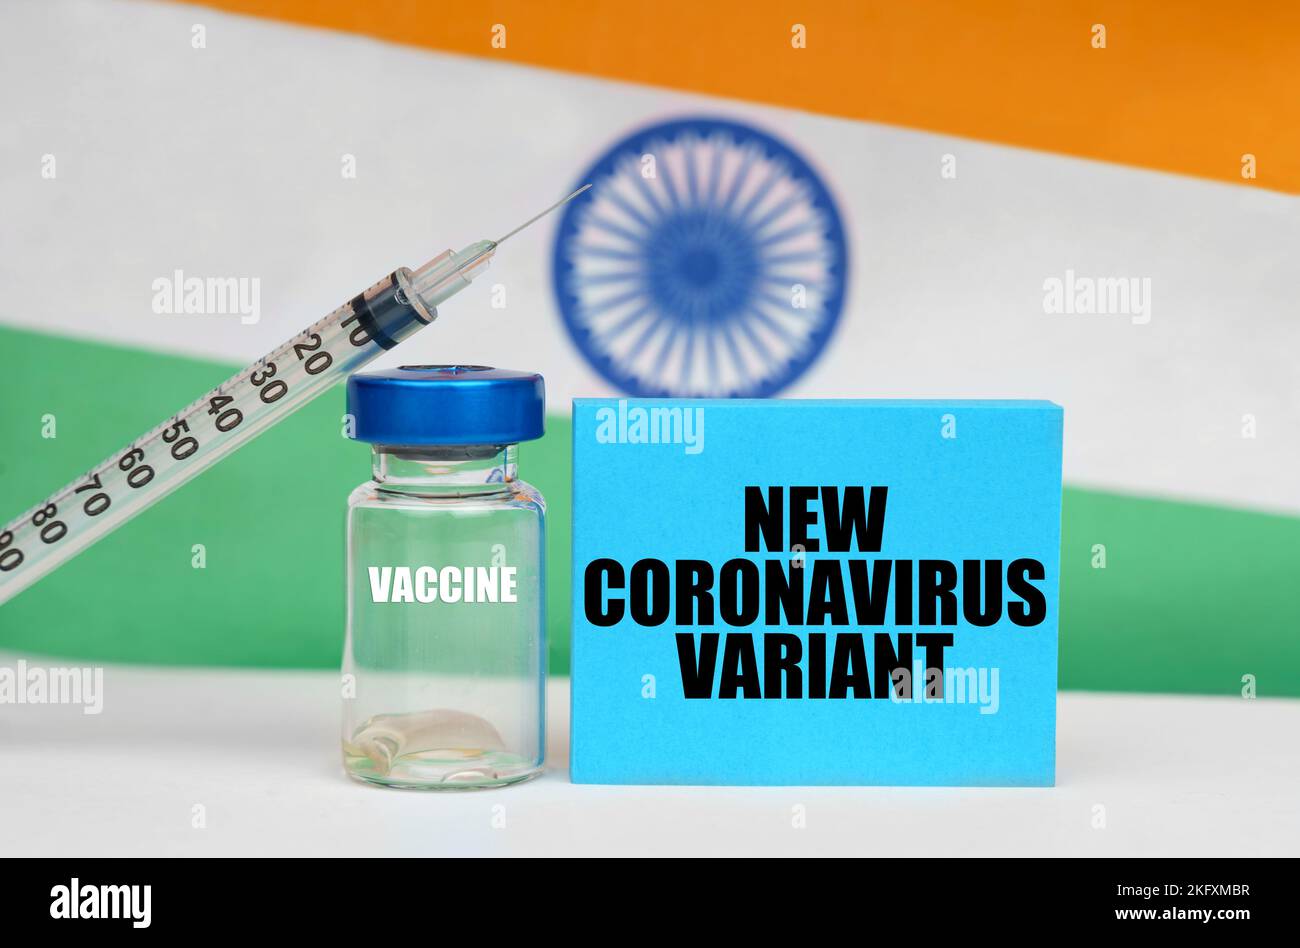 Concetto di medicina. Vaccino, siringa e piastra blu con l'iscrizione - NUOVA VARIANTE DI CORONAVIRUS. Sullo sfondo la bandiera dell'India Foto Stock